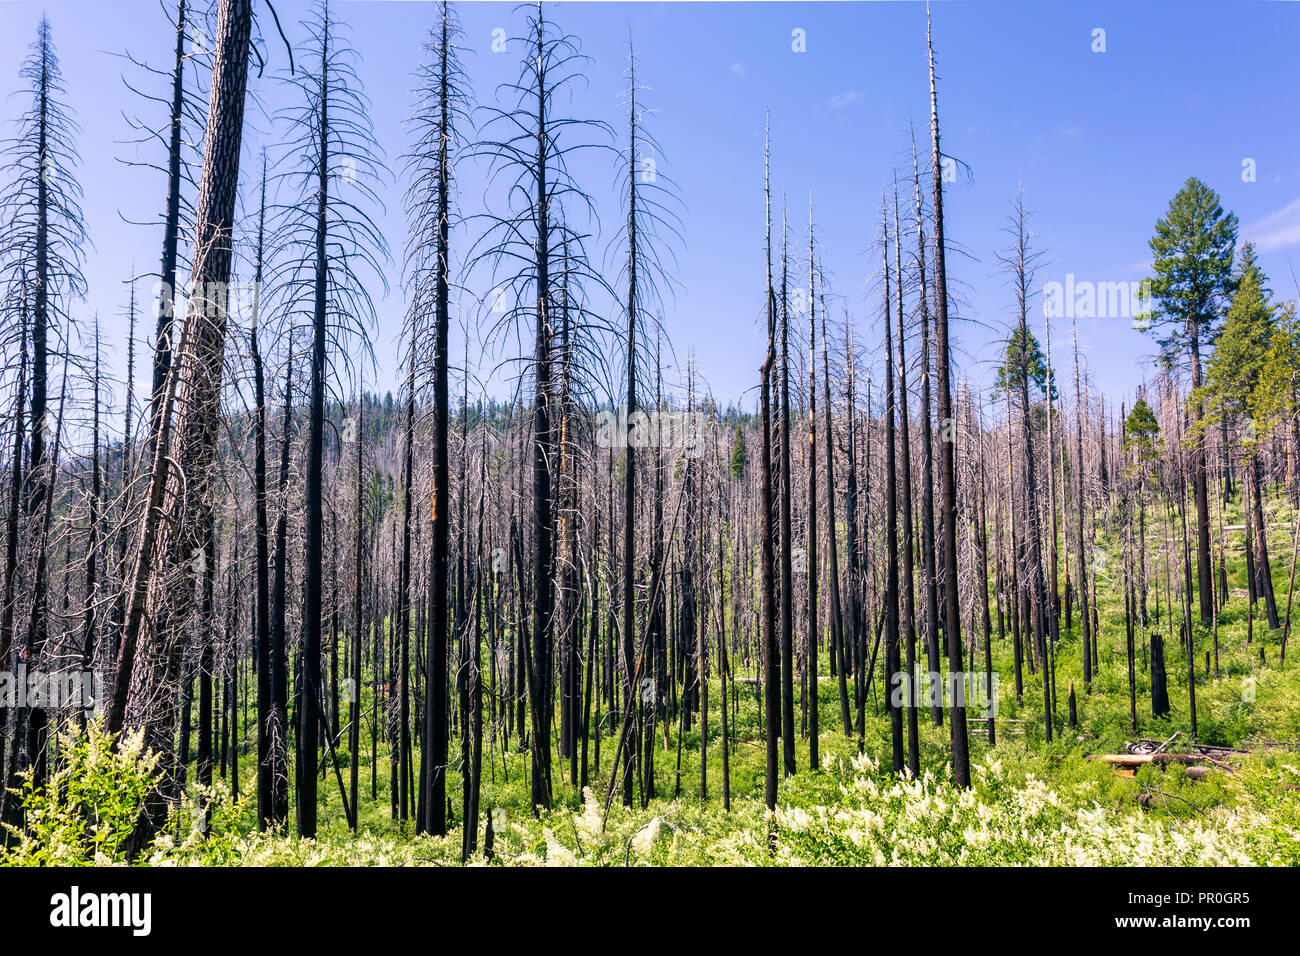 Ein Wald Feuer zerstört eine Fläche von Wald im Yosemite Valley in den Yosemite Nationalpark, UNESCO, Kalifornien, Vereinigte Staaten von Amerika Stockfoto